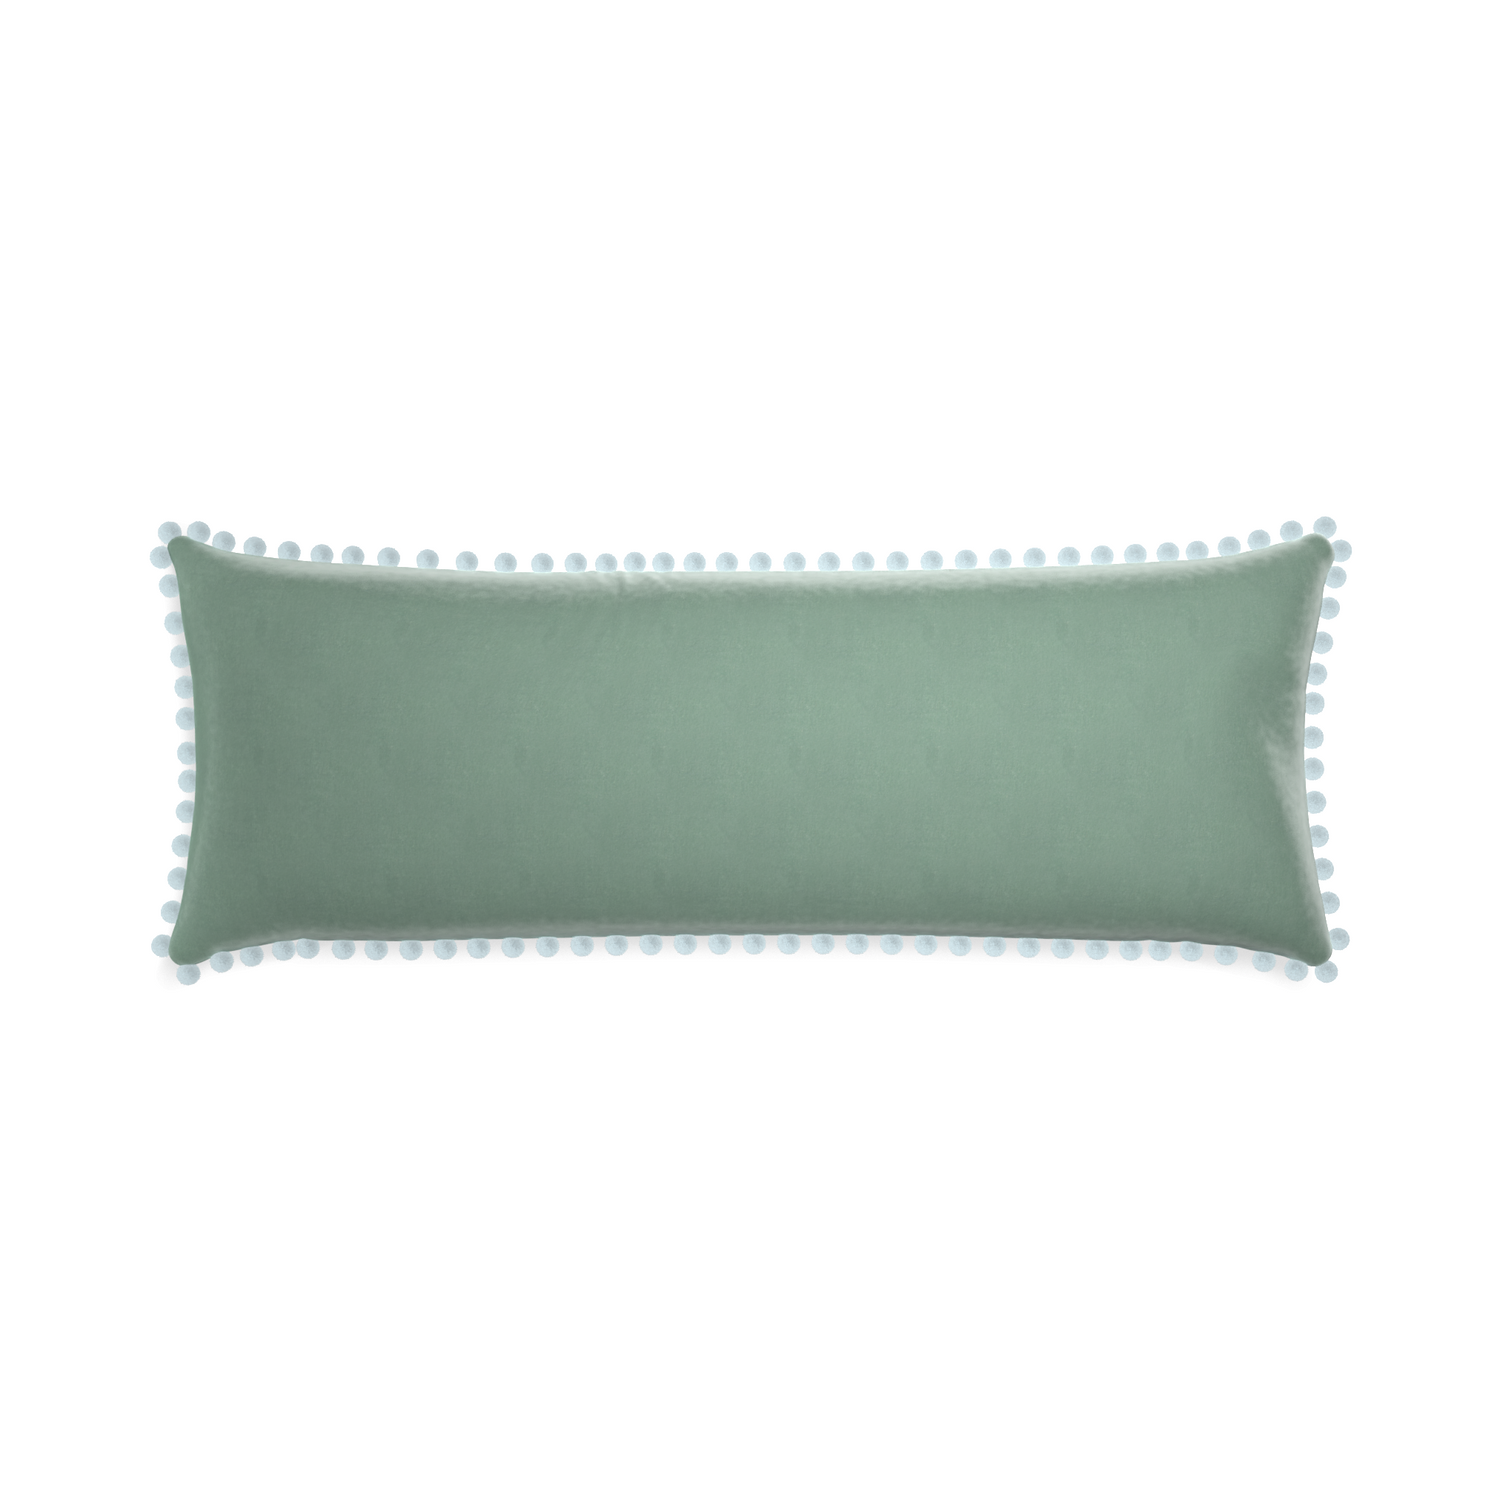 rectangle blue green velvet pillow with light blue pom poms